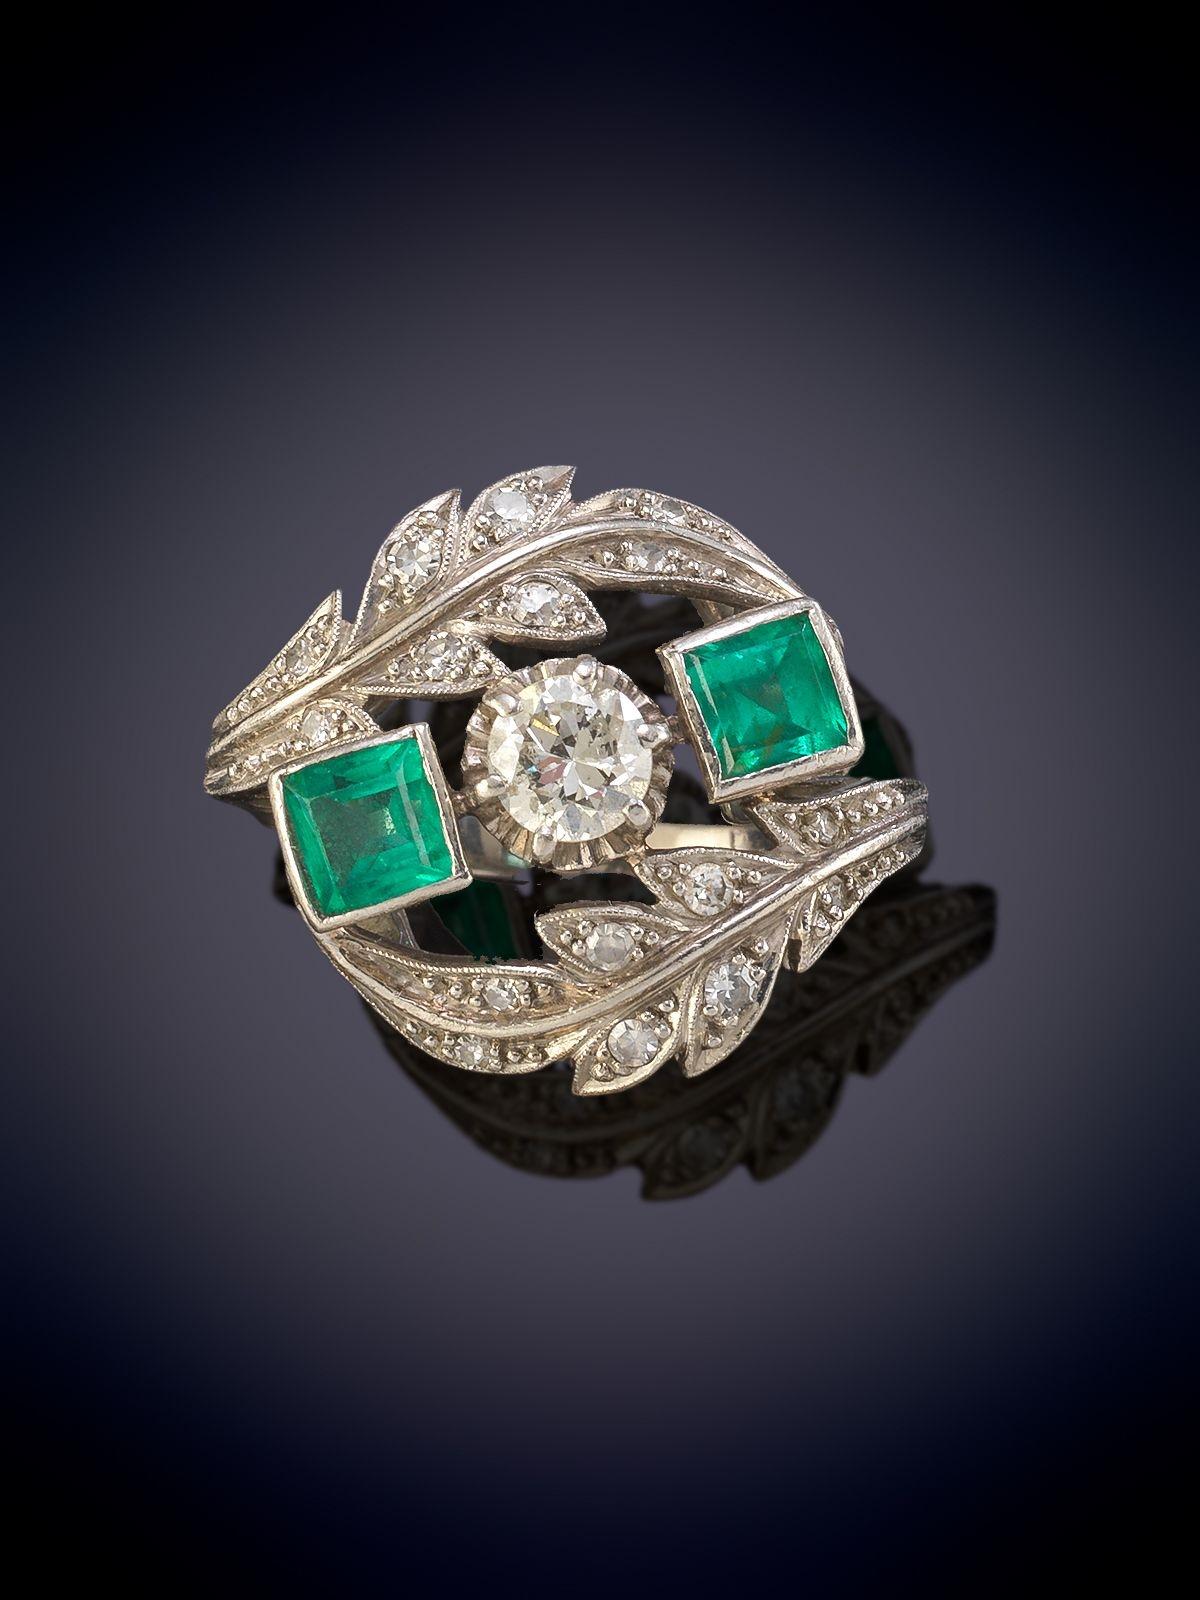 Dreistein-Diamanten- und Smaragdring. Montiert in Platin.
Zwei sind besser als einer! Dieses elegante und atemberaubende Schmuckstück besteht aus einem nahtlos gefassten Paar wunderschöner, kristallklarer grüner Smaragde aus Kolumbien.  - die